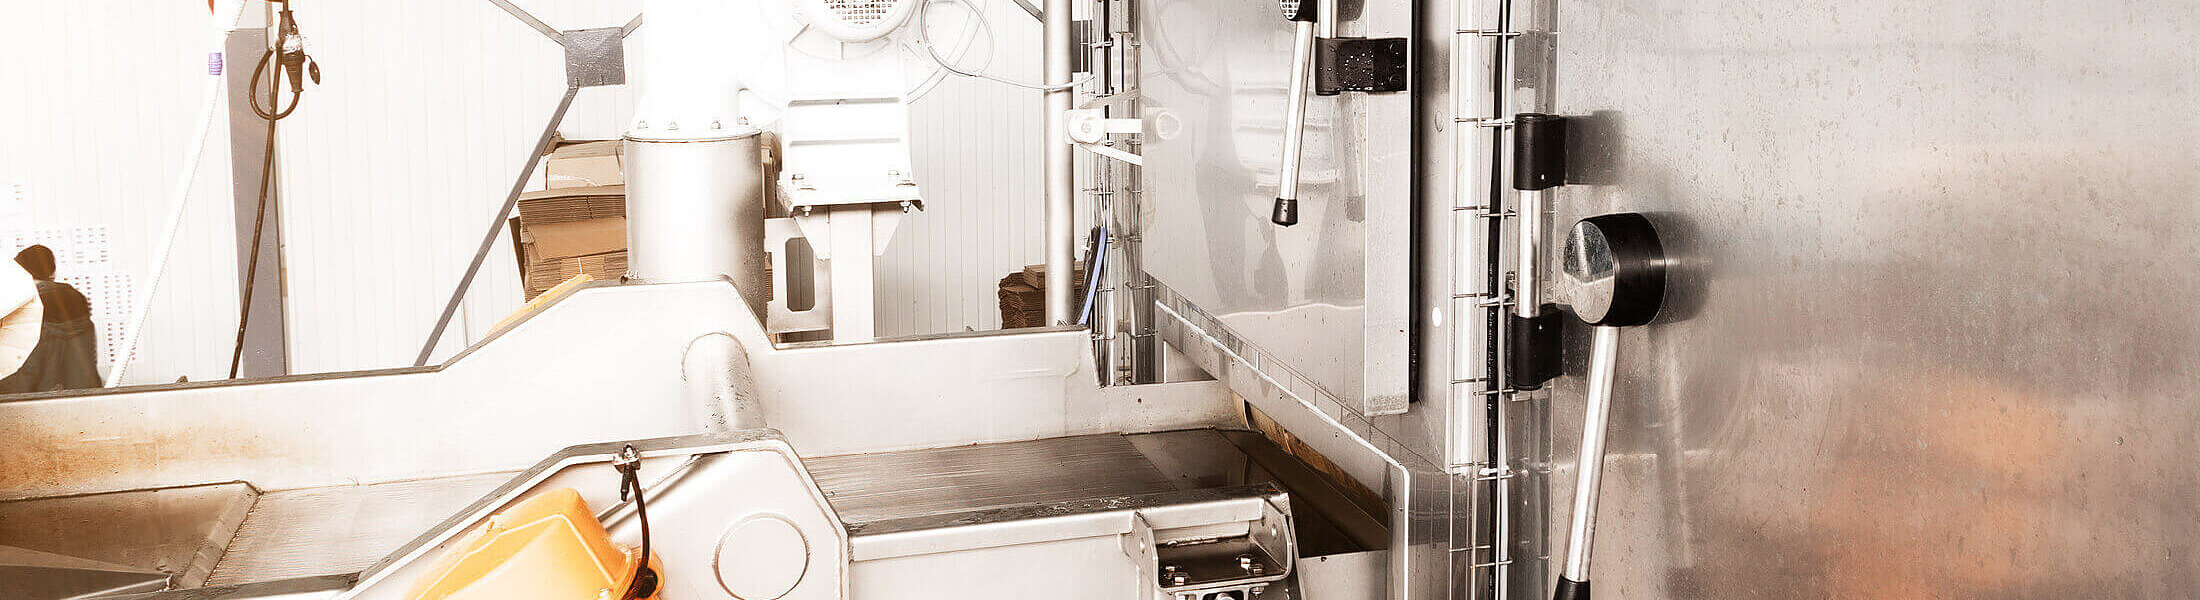 Sistema di controllo di processo Demig per la tecnologia di refrigerazione e condizionamento automatizzata